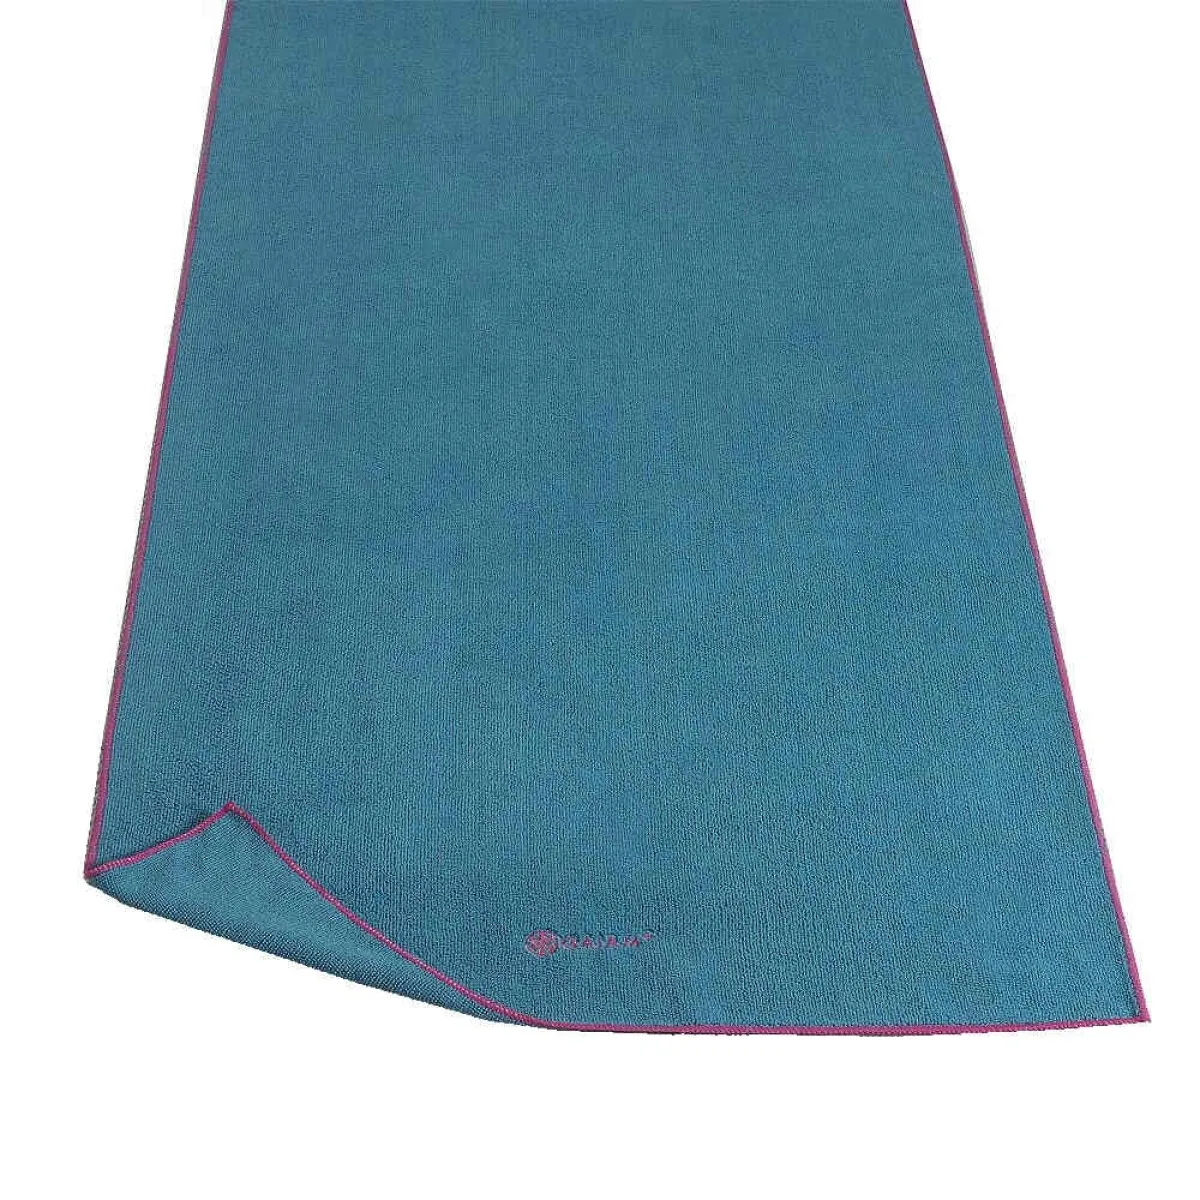 Yoga Handtuch blau/fuchsia 170x 60 cm